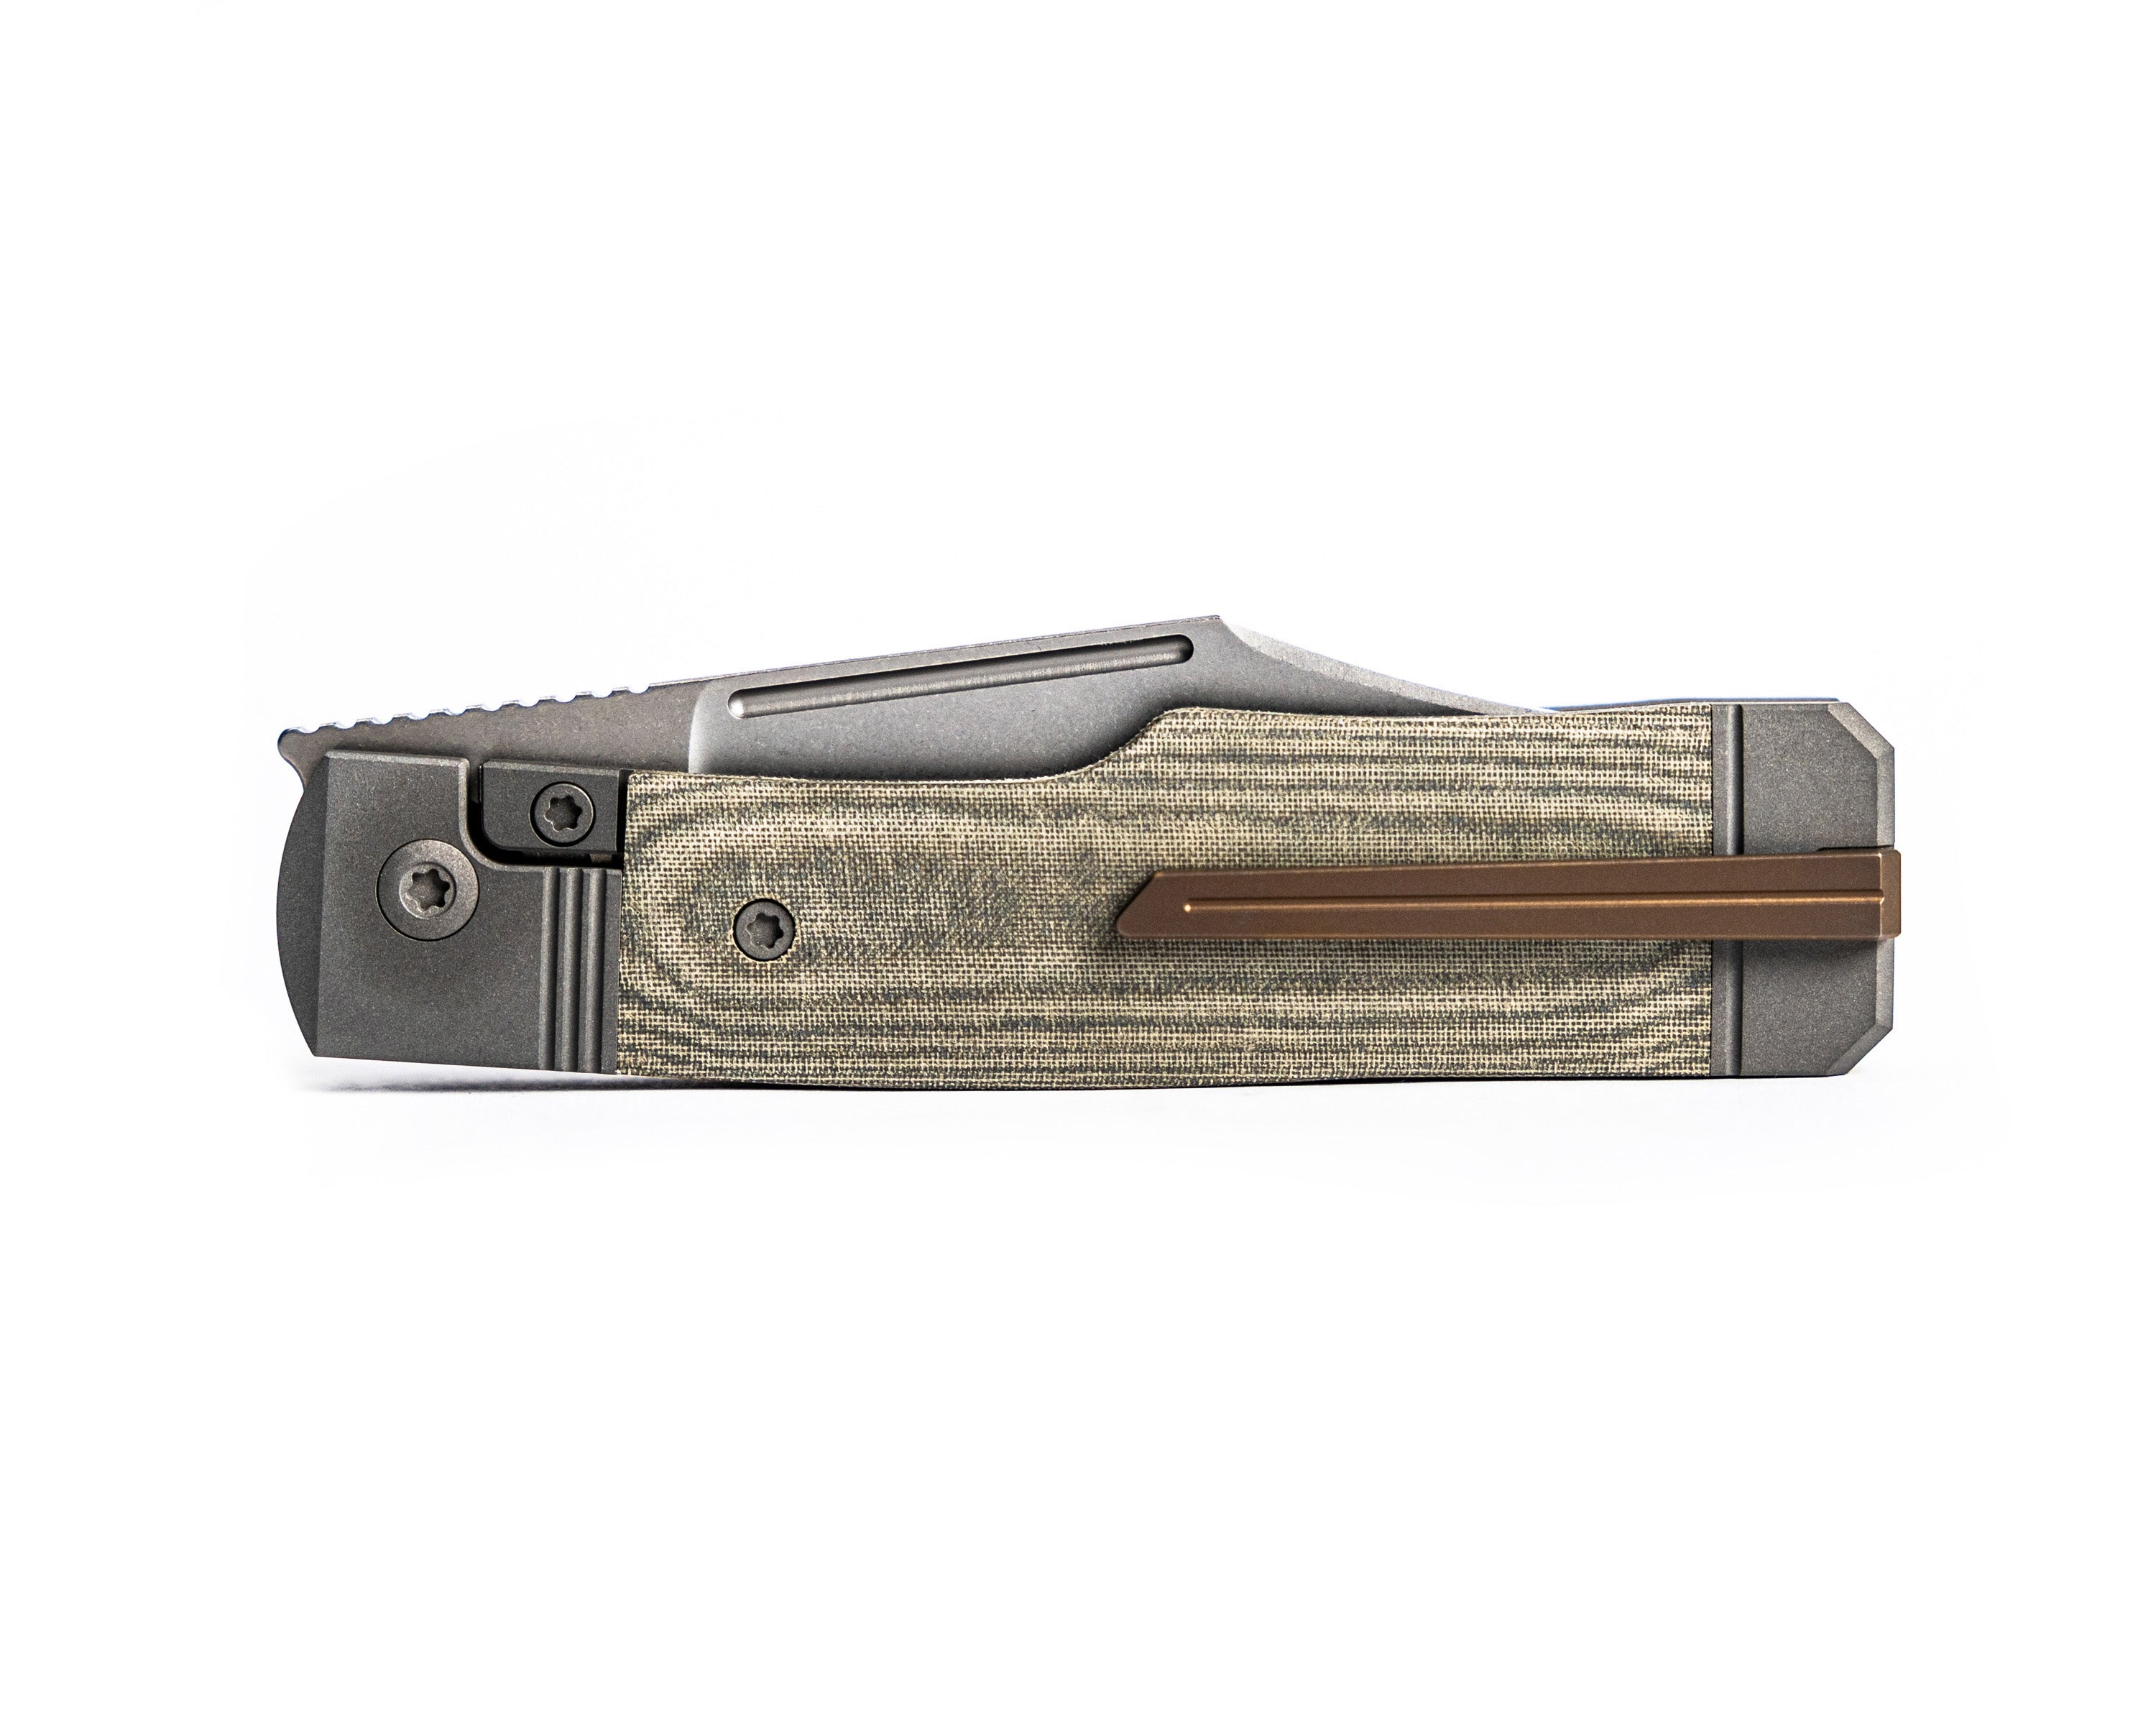 Gunslinger Jack Knife side profile of back of knife (including clip) placed on its spine against a white background